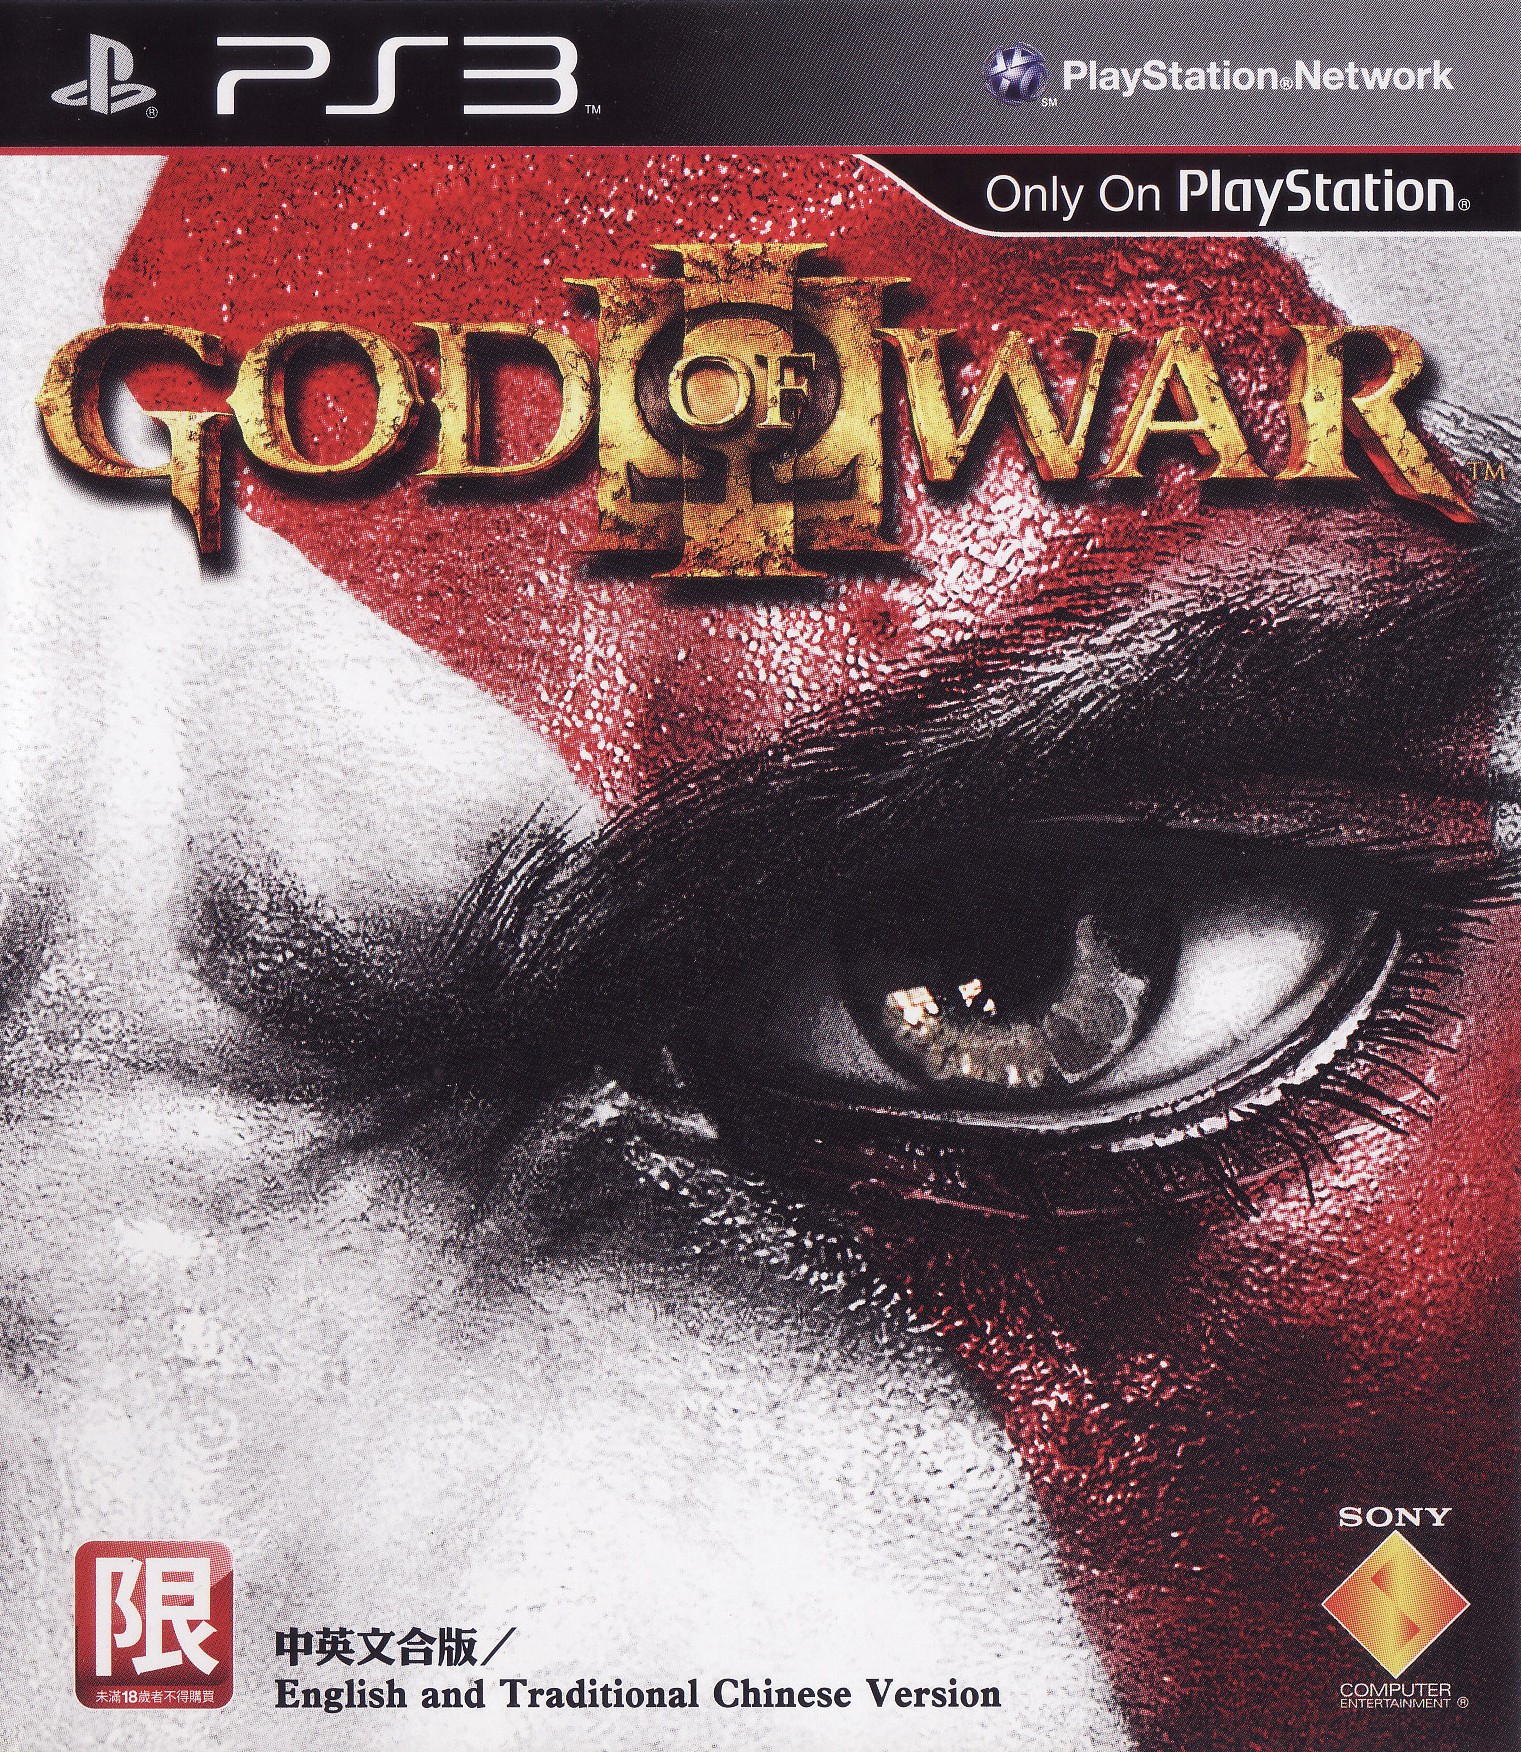 'God of War: III'